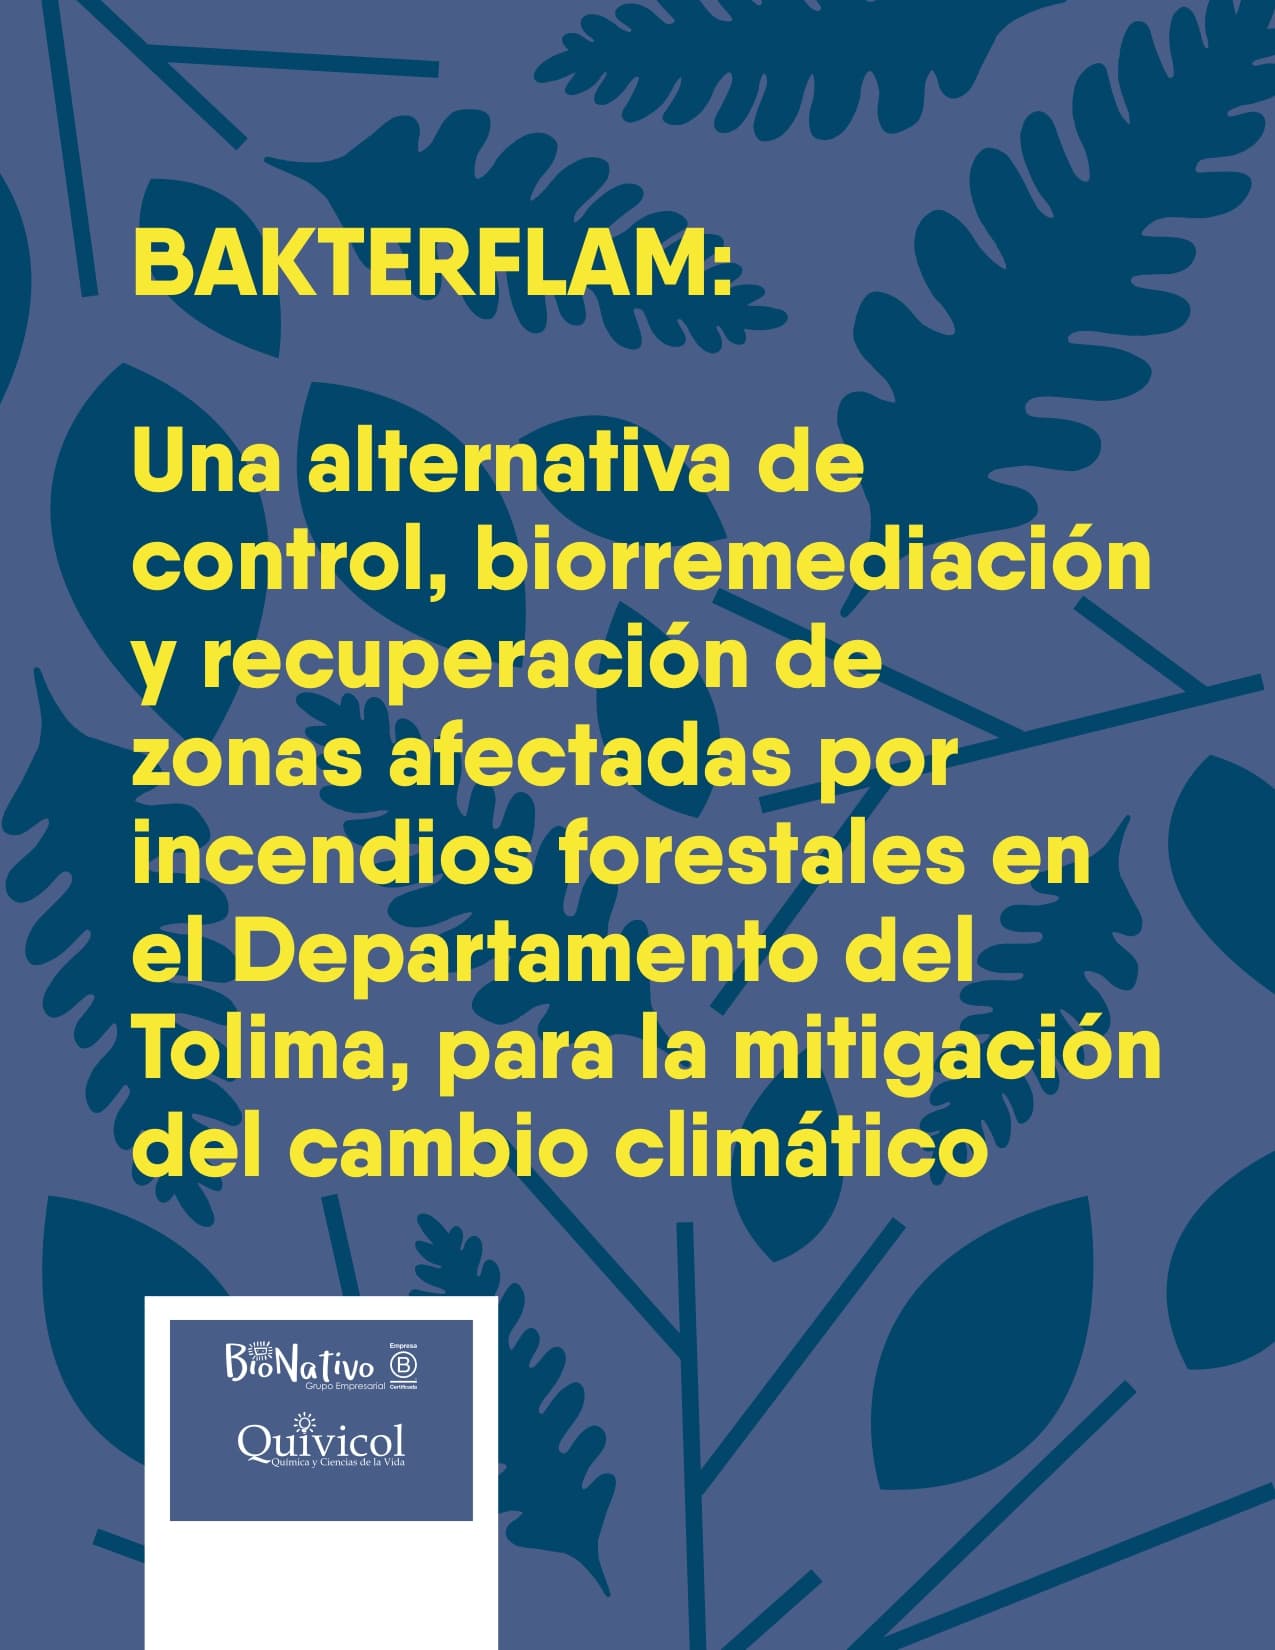 Bakterflam: una alternativa de control, biorremediación y recuperación de zonas afectadas por incendios forestales en el departamento del Tolima